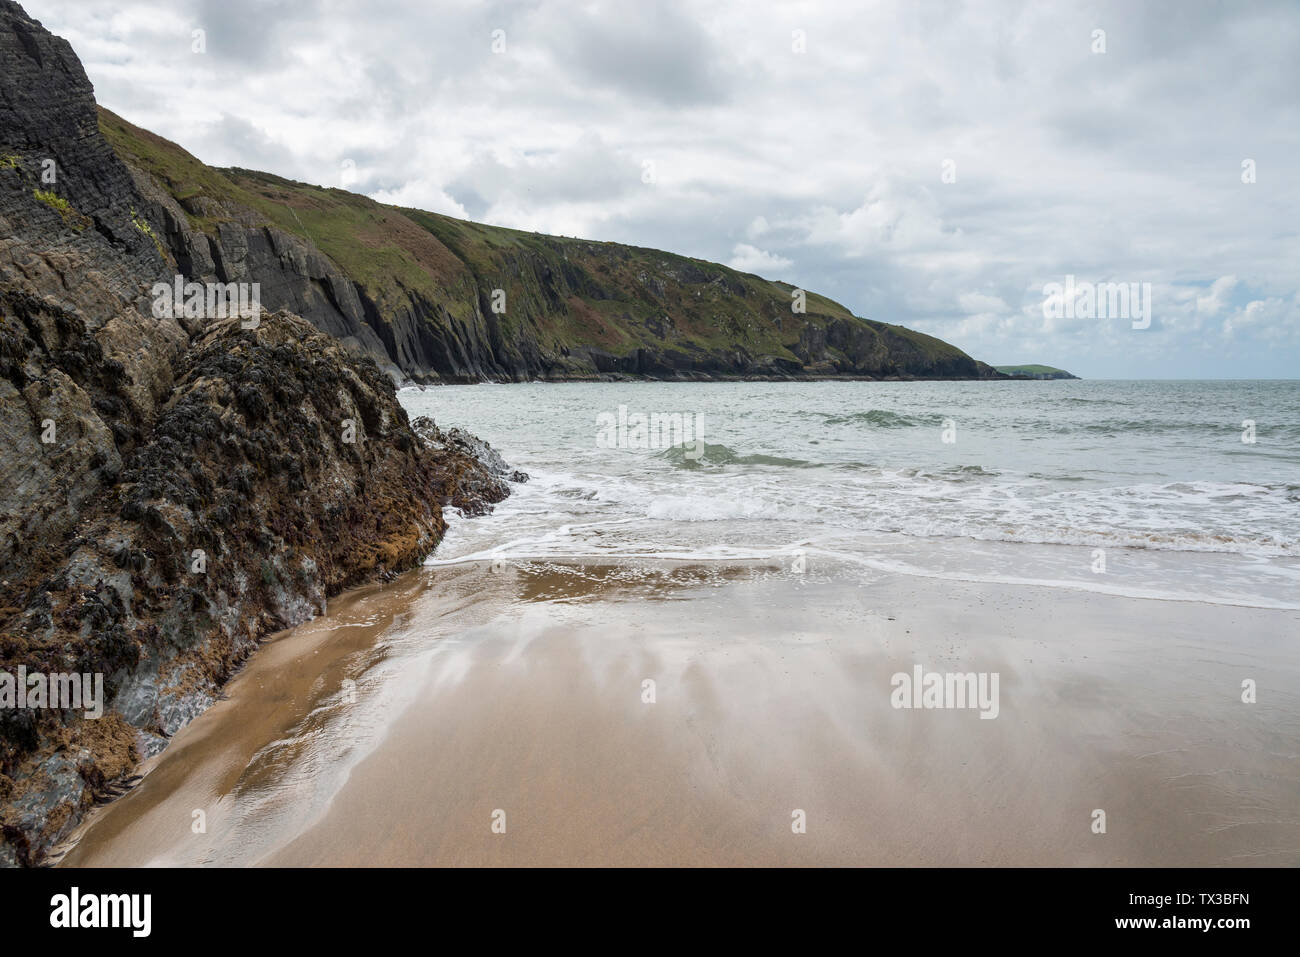 La spiaggia di Mwnt vicino Cardigan in Ceredigion, West Wales. Foto Stock